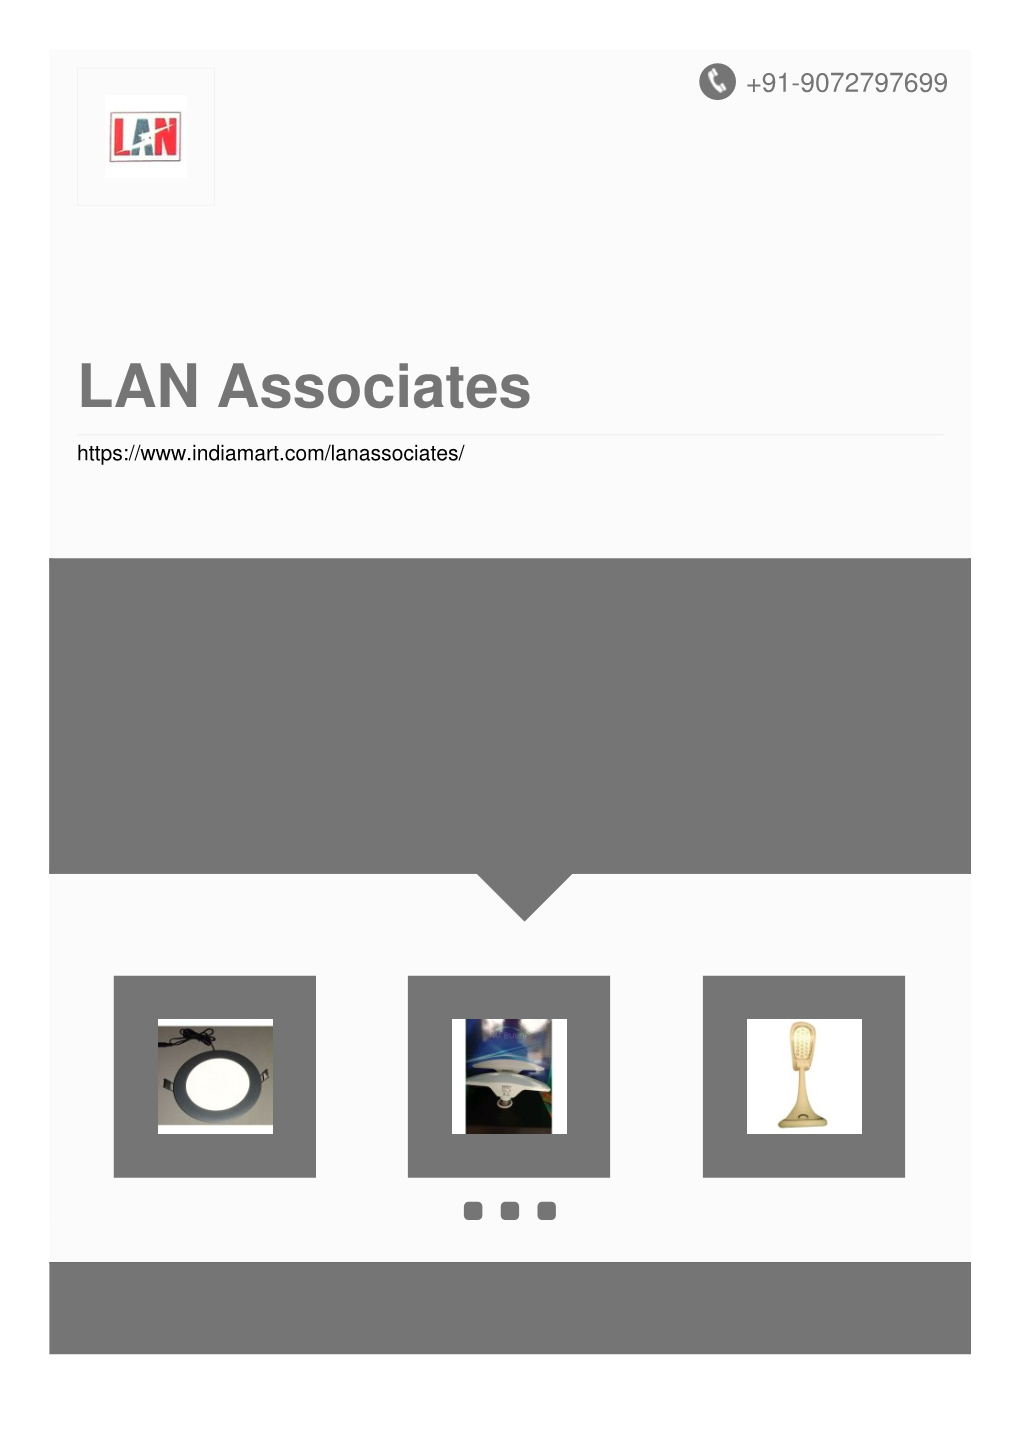 LAN Associates About Us